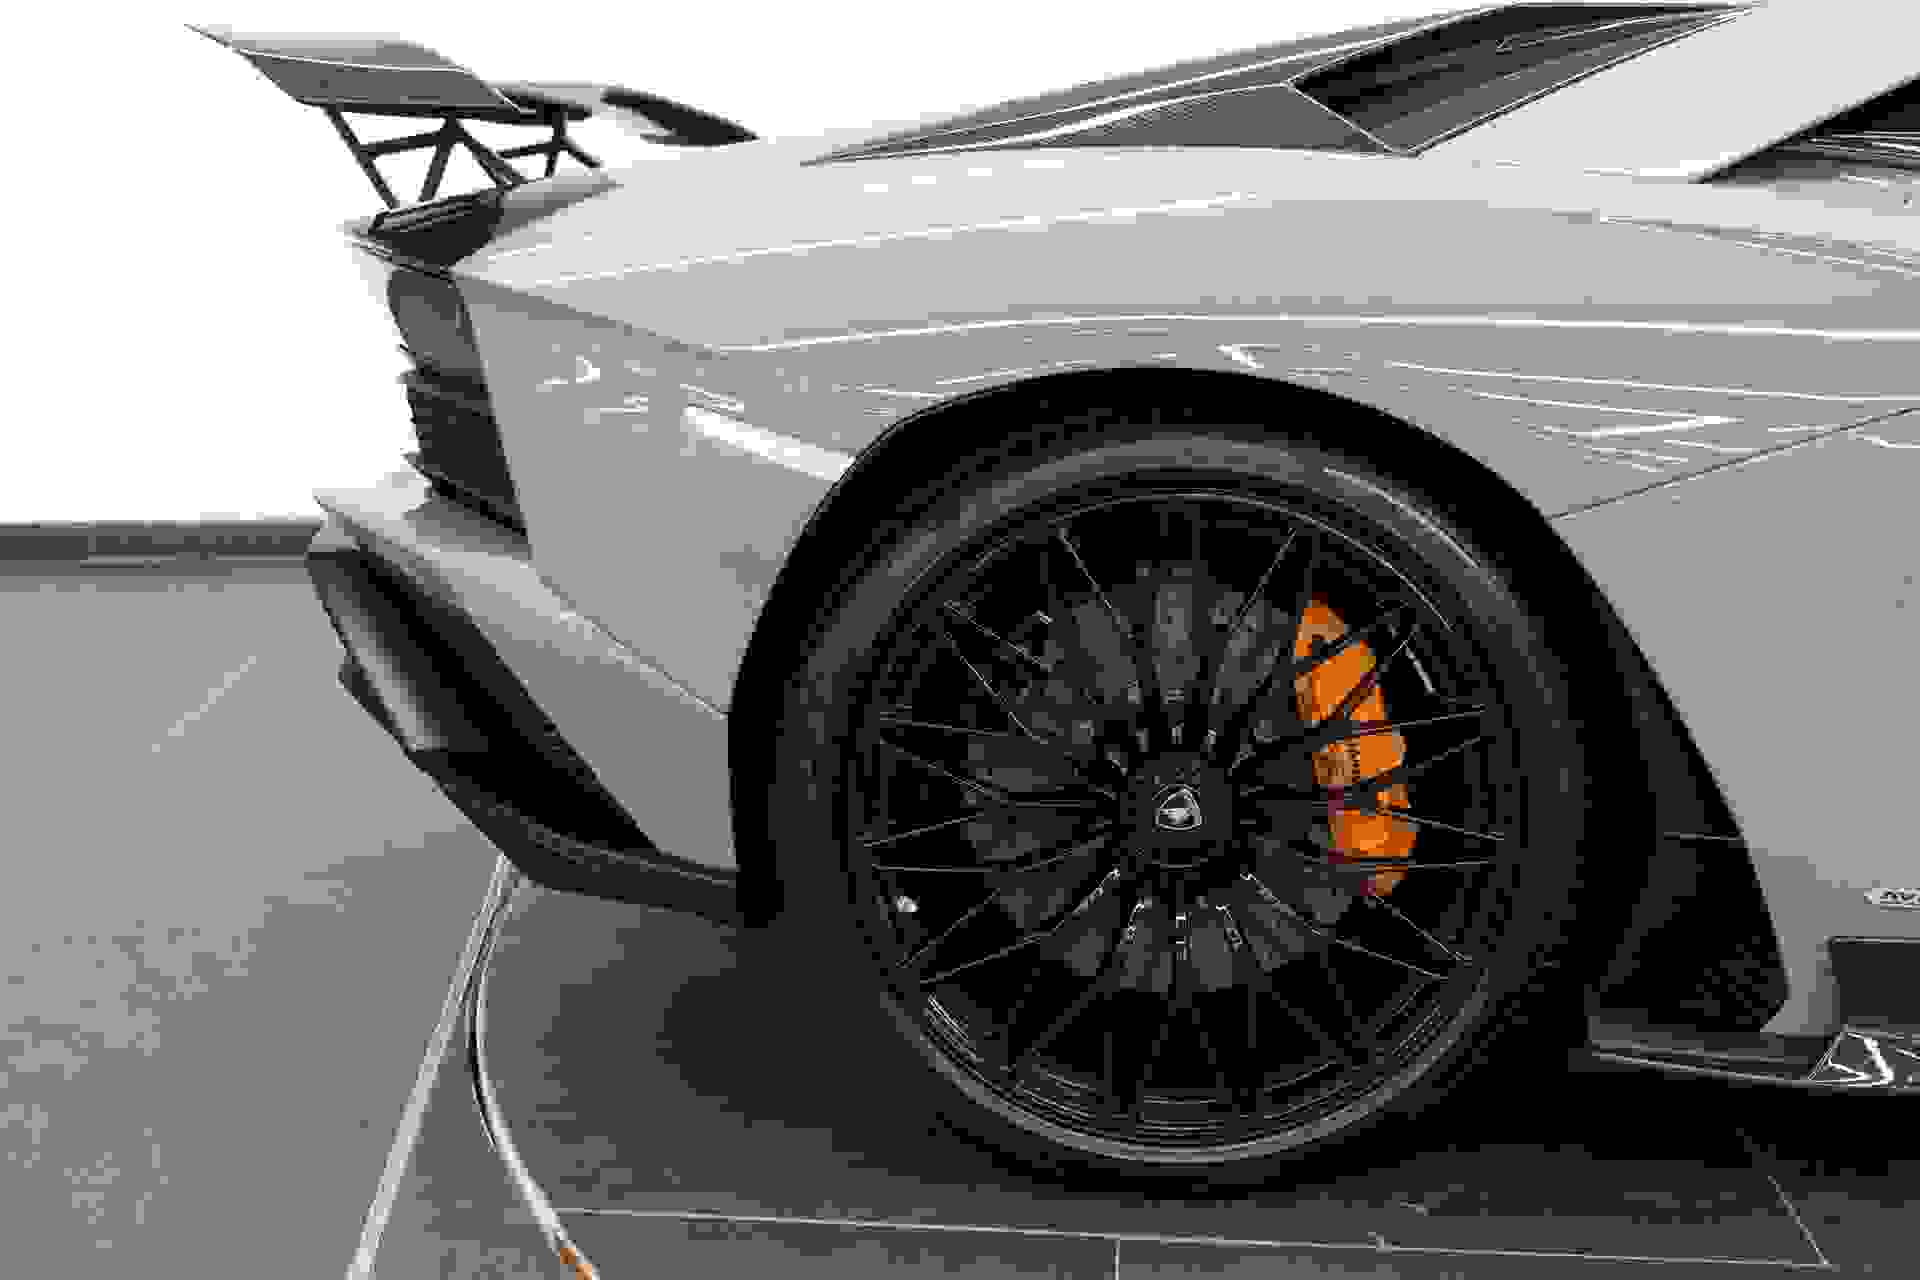 Lamborghini AVENTADOR S Photo 6940c4e7-daf2-4aac-be8e-ae40164b4cd9.jpg